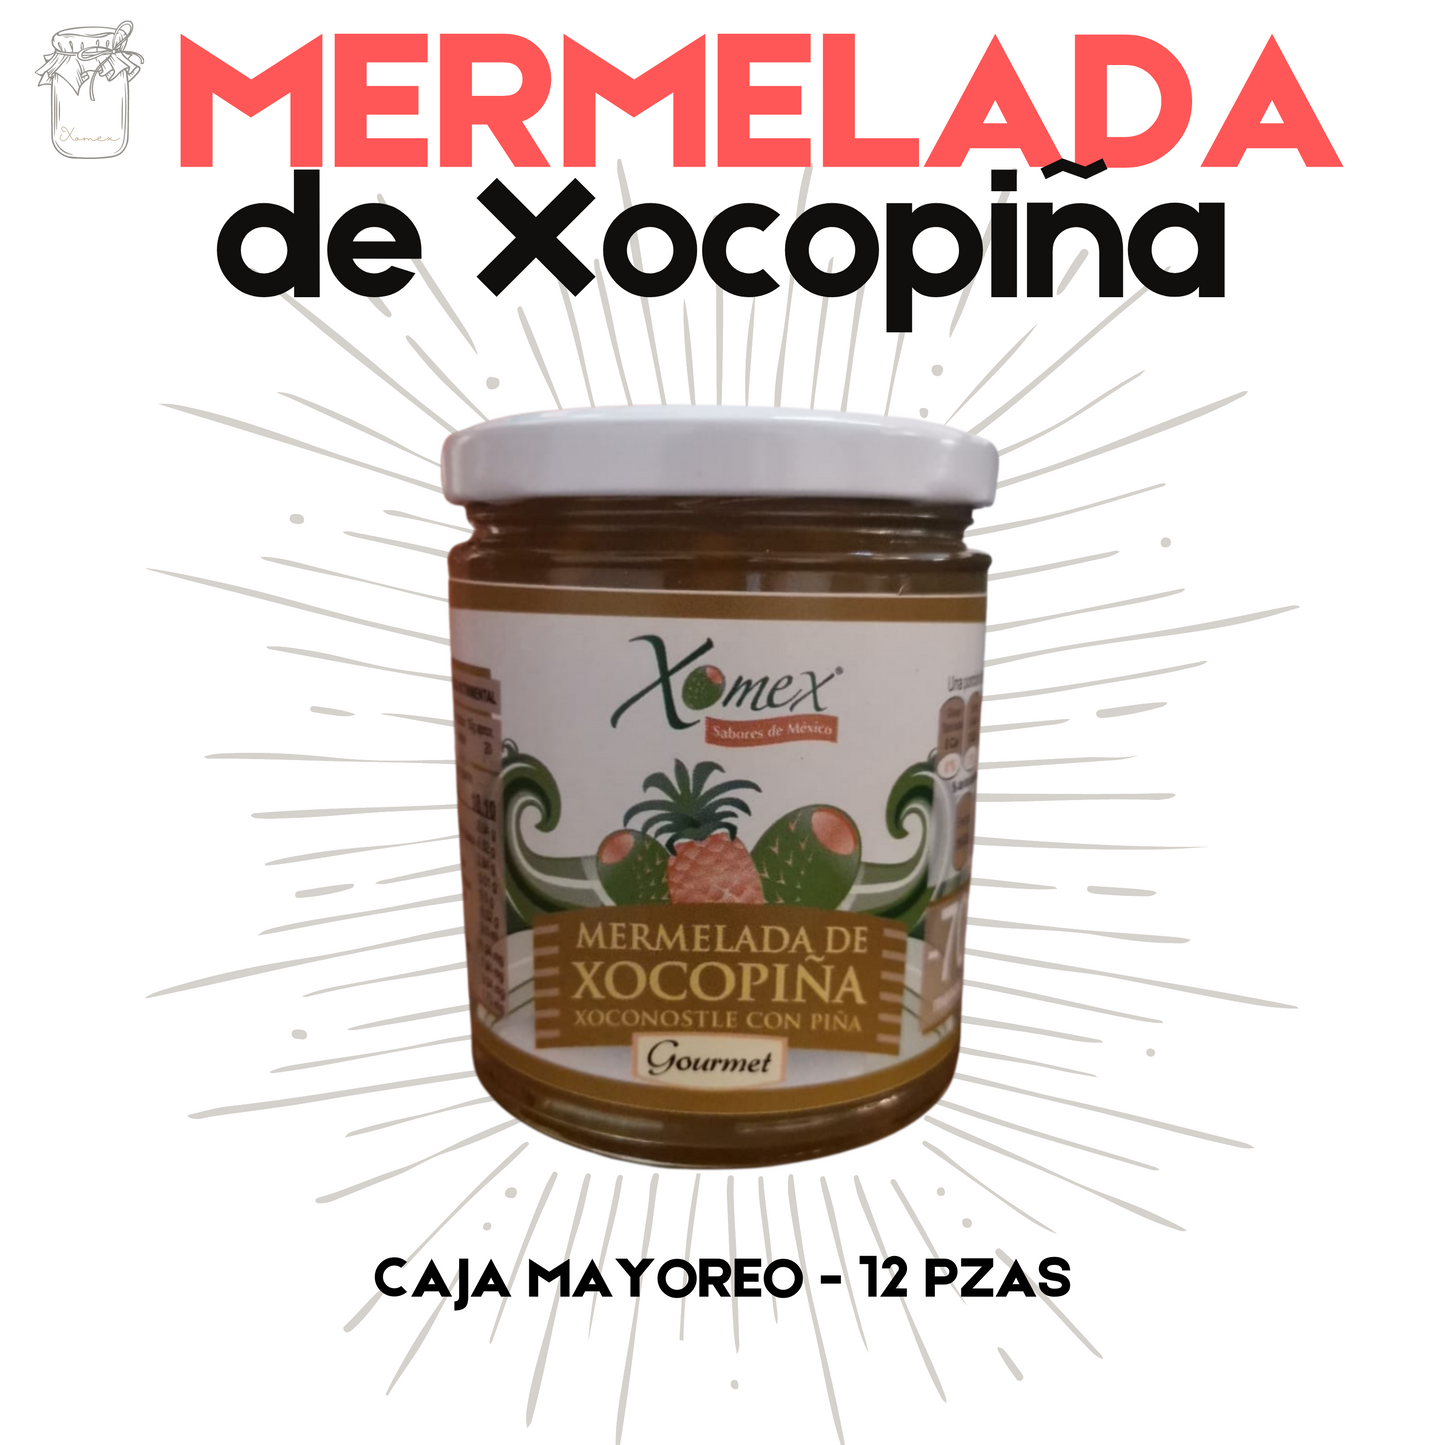 Mermelada de Xocopiña | Xoconostle y Piña | 100% natural | 12 frascos | Mexpofood